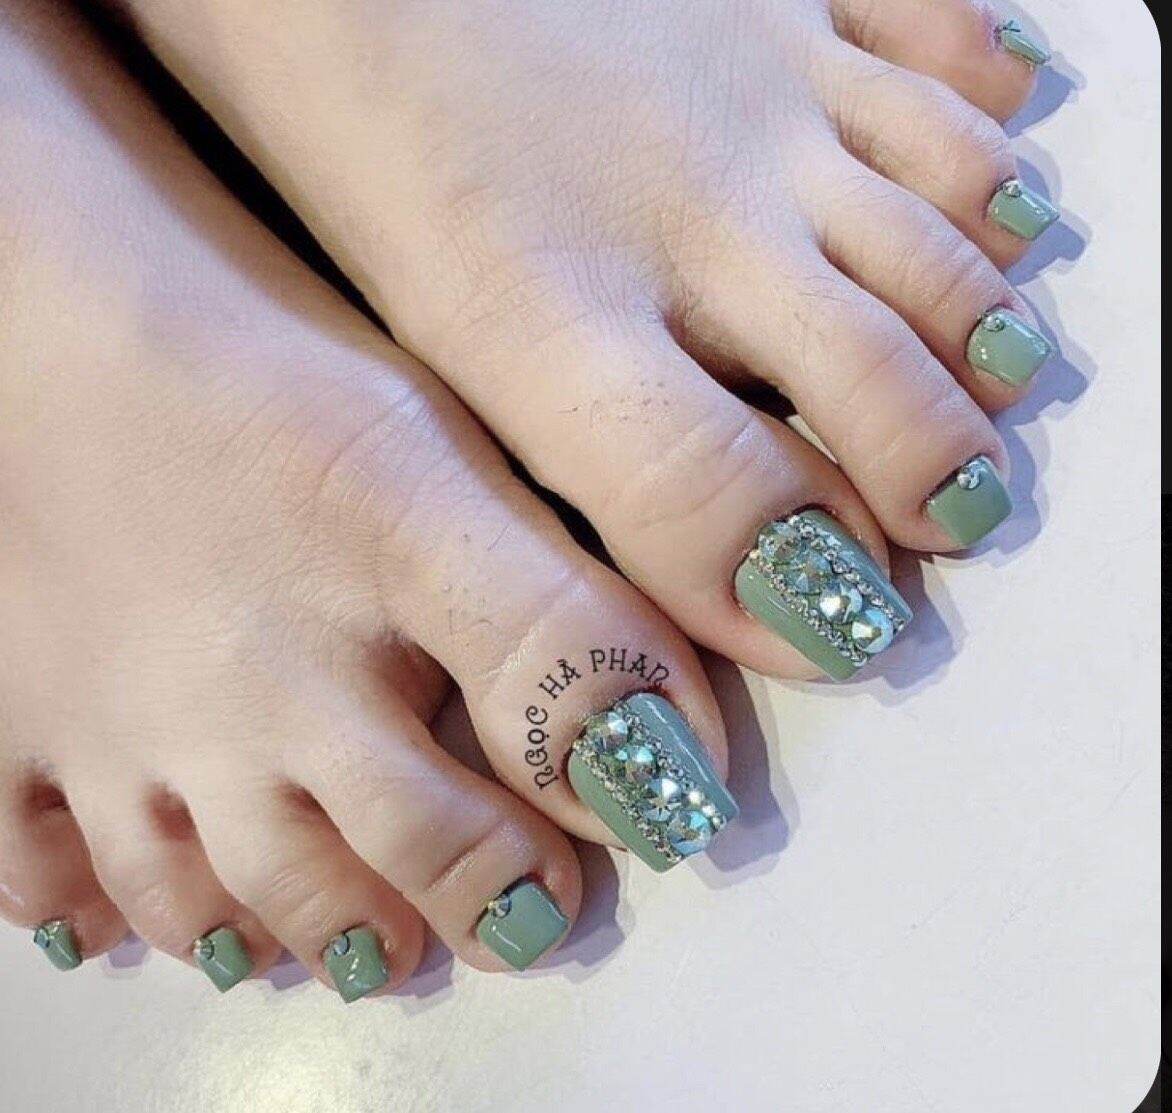 Top 100 những mẫu nail chân màu xanh ngọc được yêu thích nhất